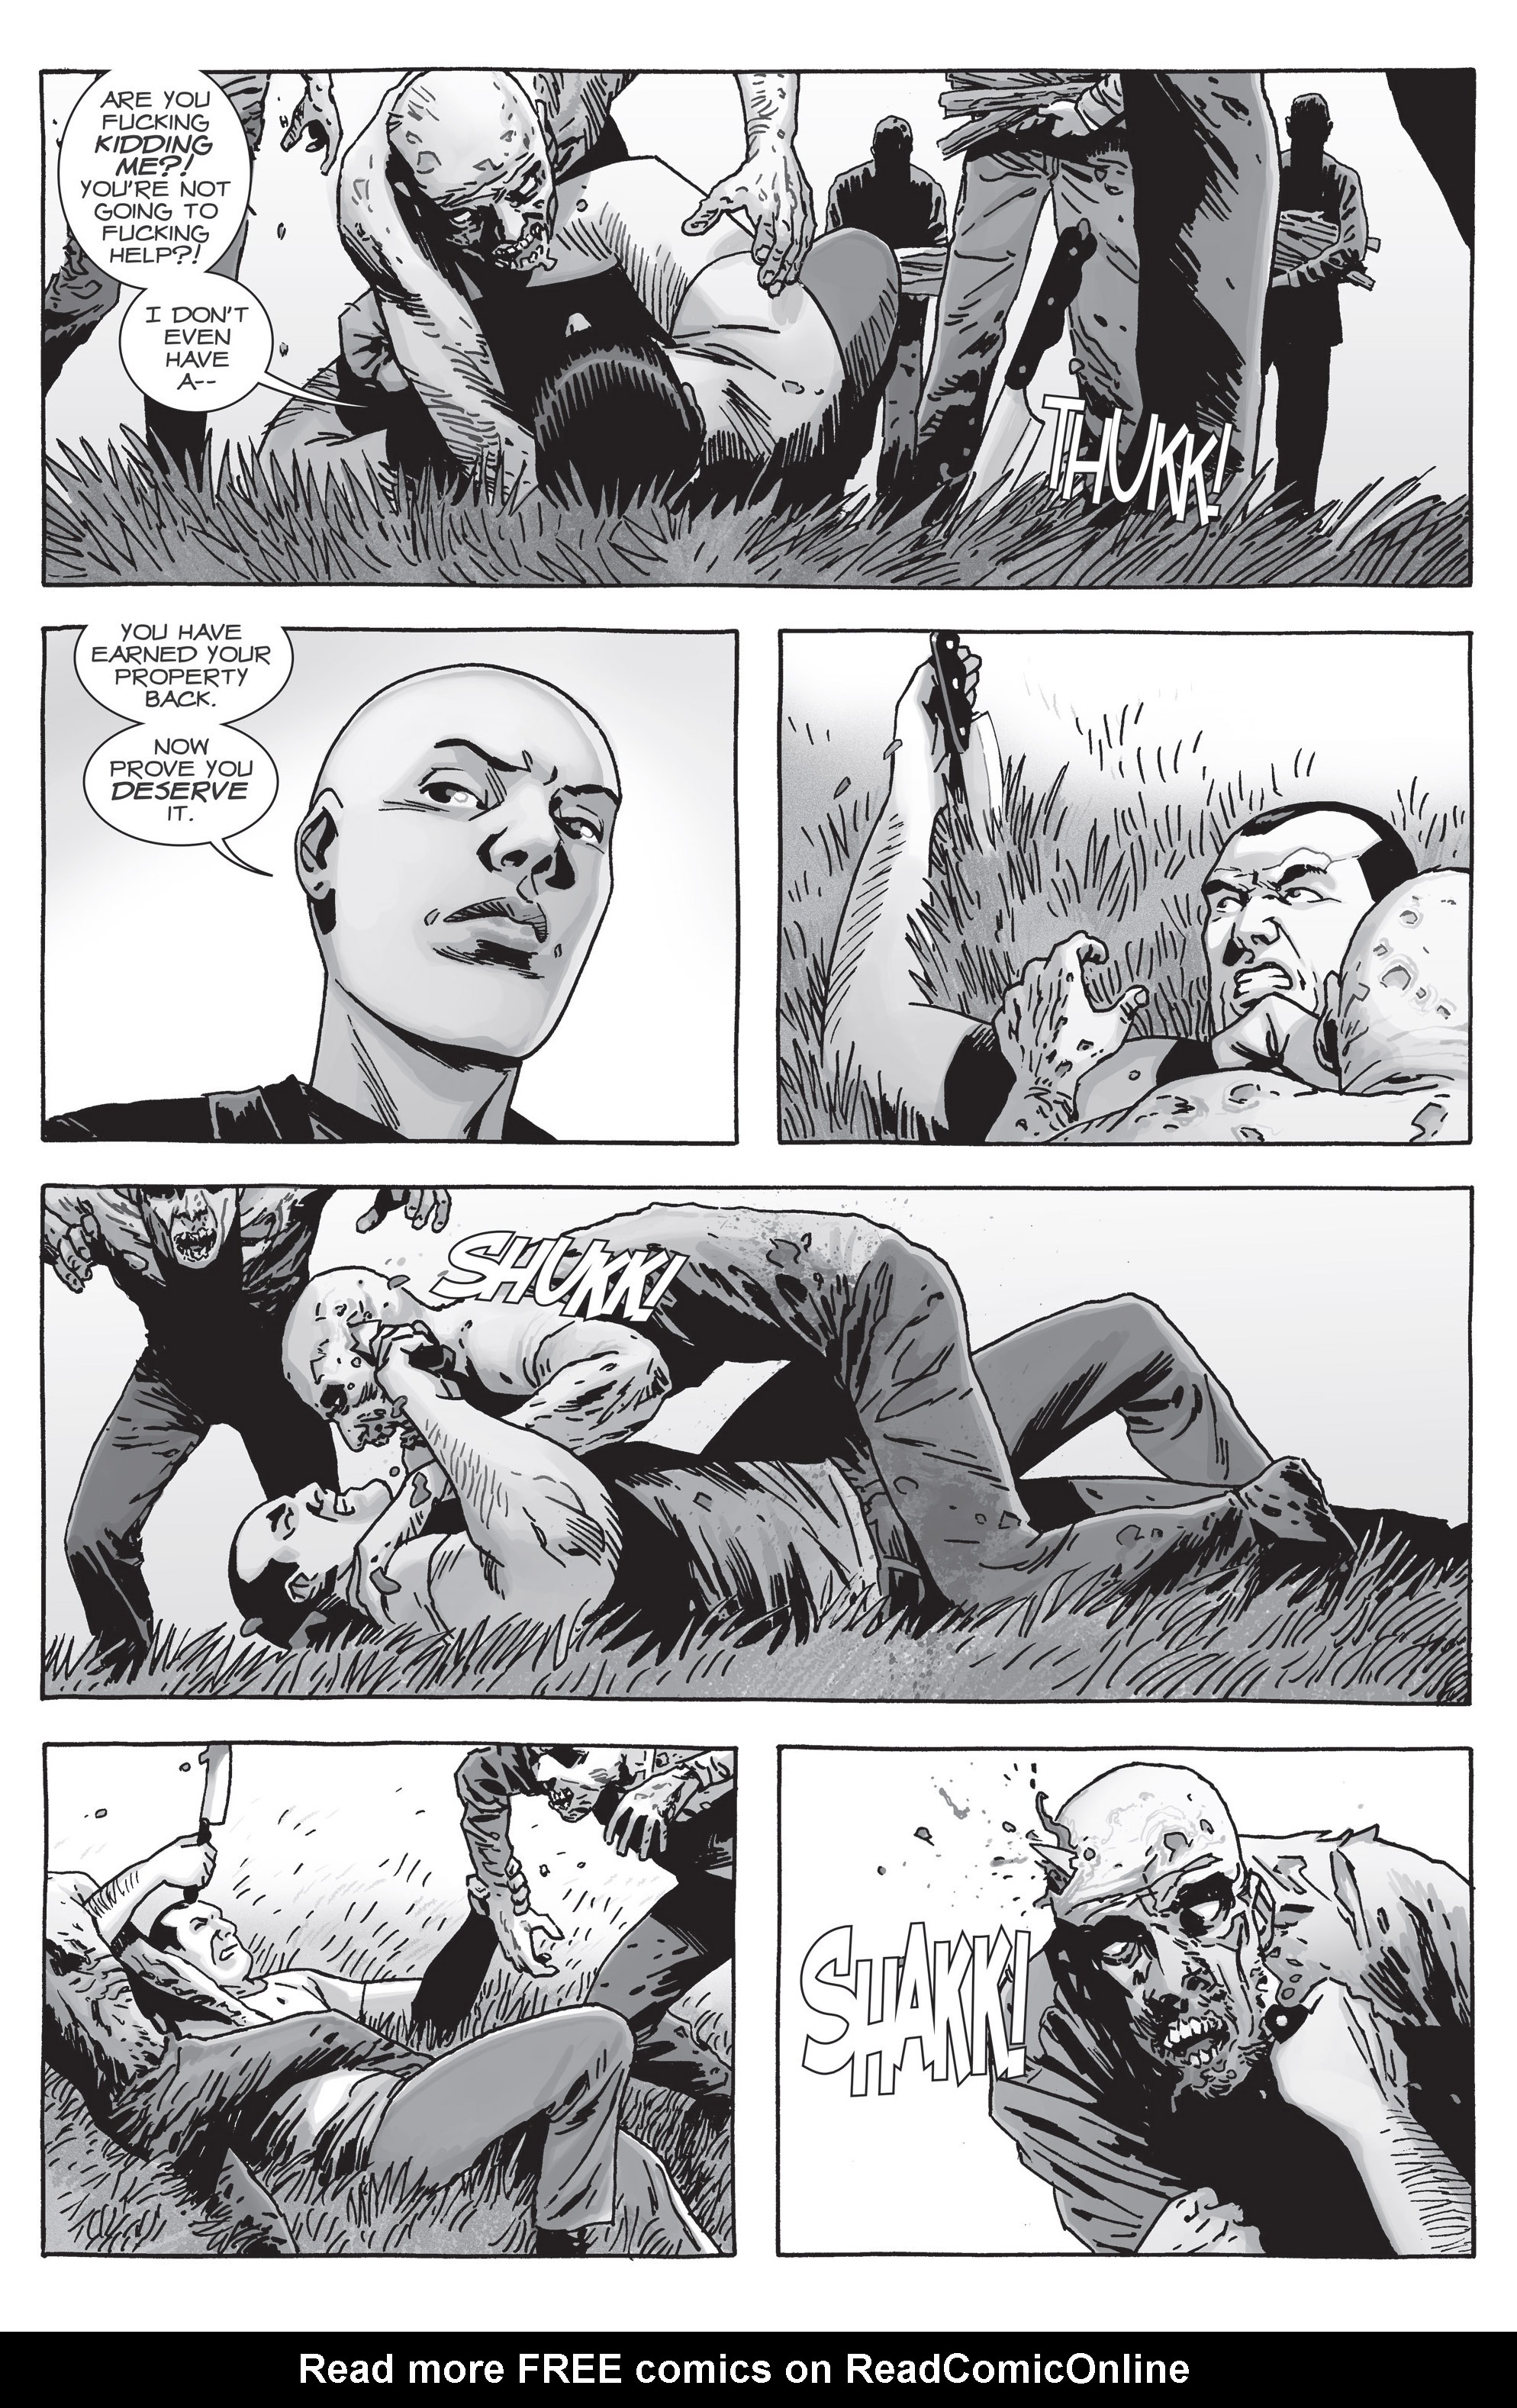 Read online The Walking Dead comic -  Issue #156 - 10